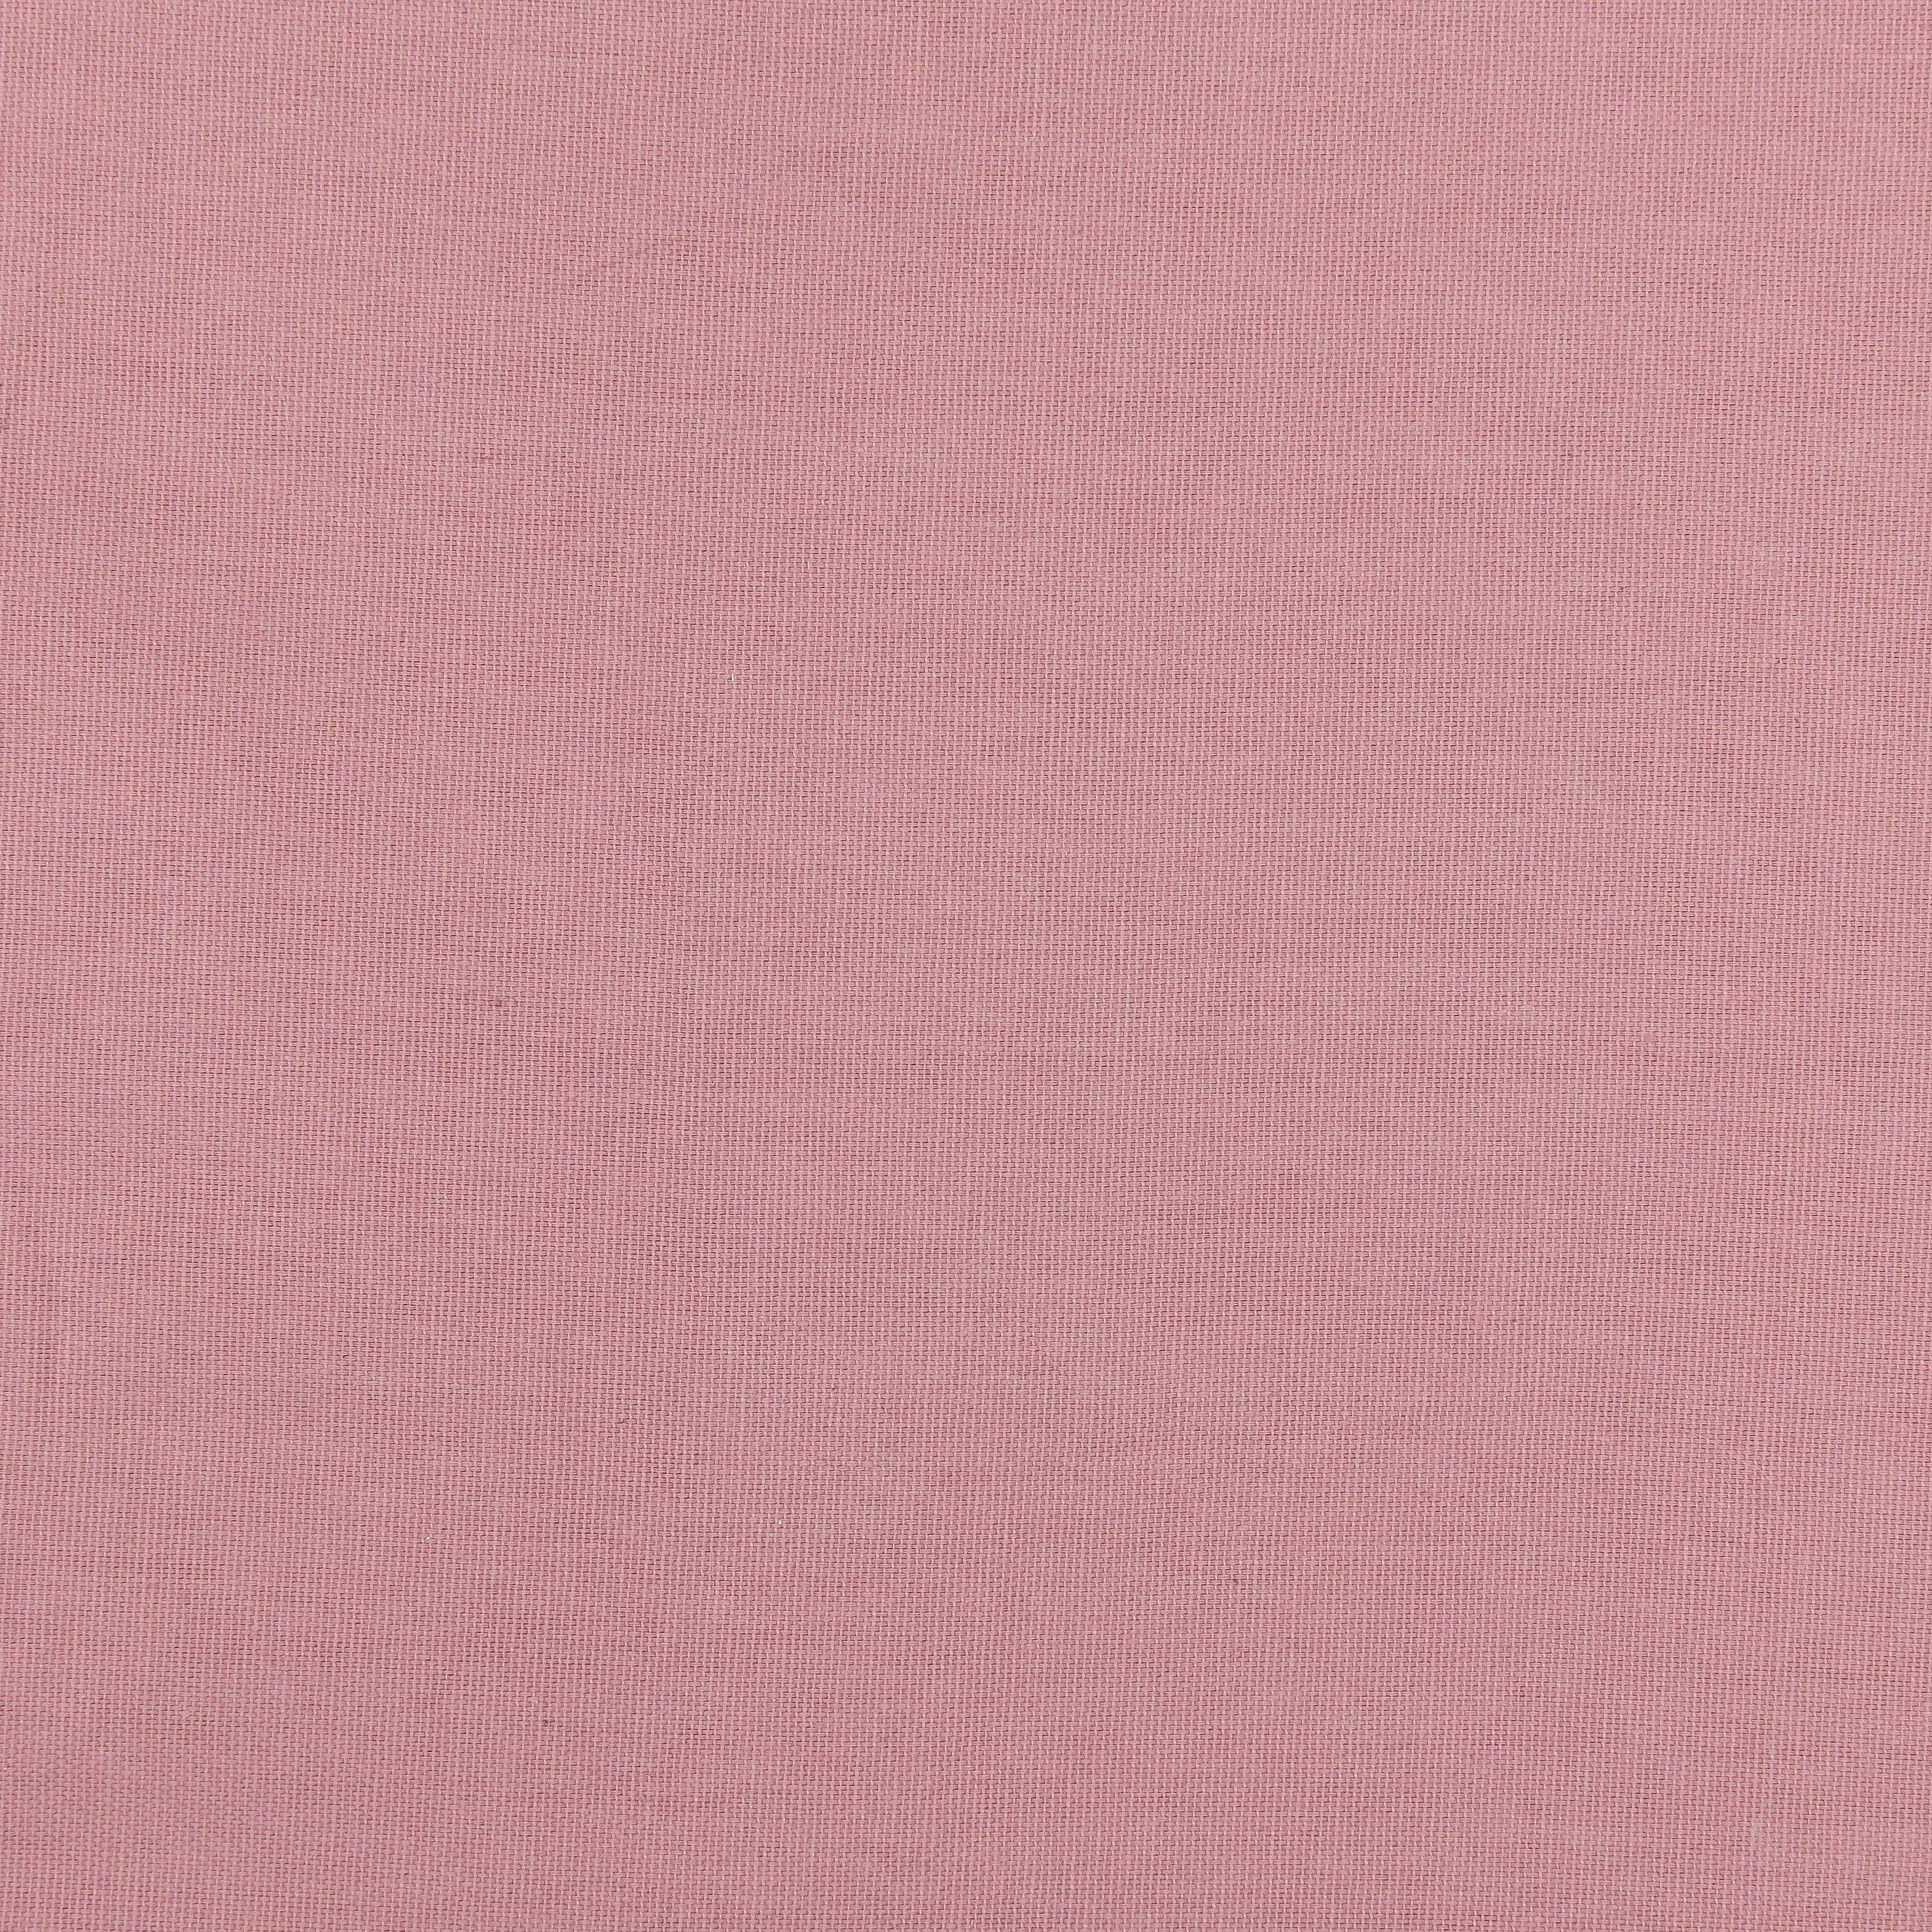 Ösenvorhang Greta rosé B/L: ca. 140x245 cm Greta - rosé (140,00/245,00cm)